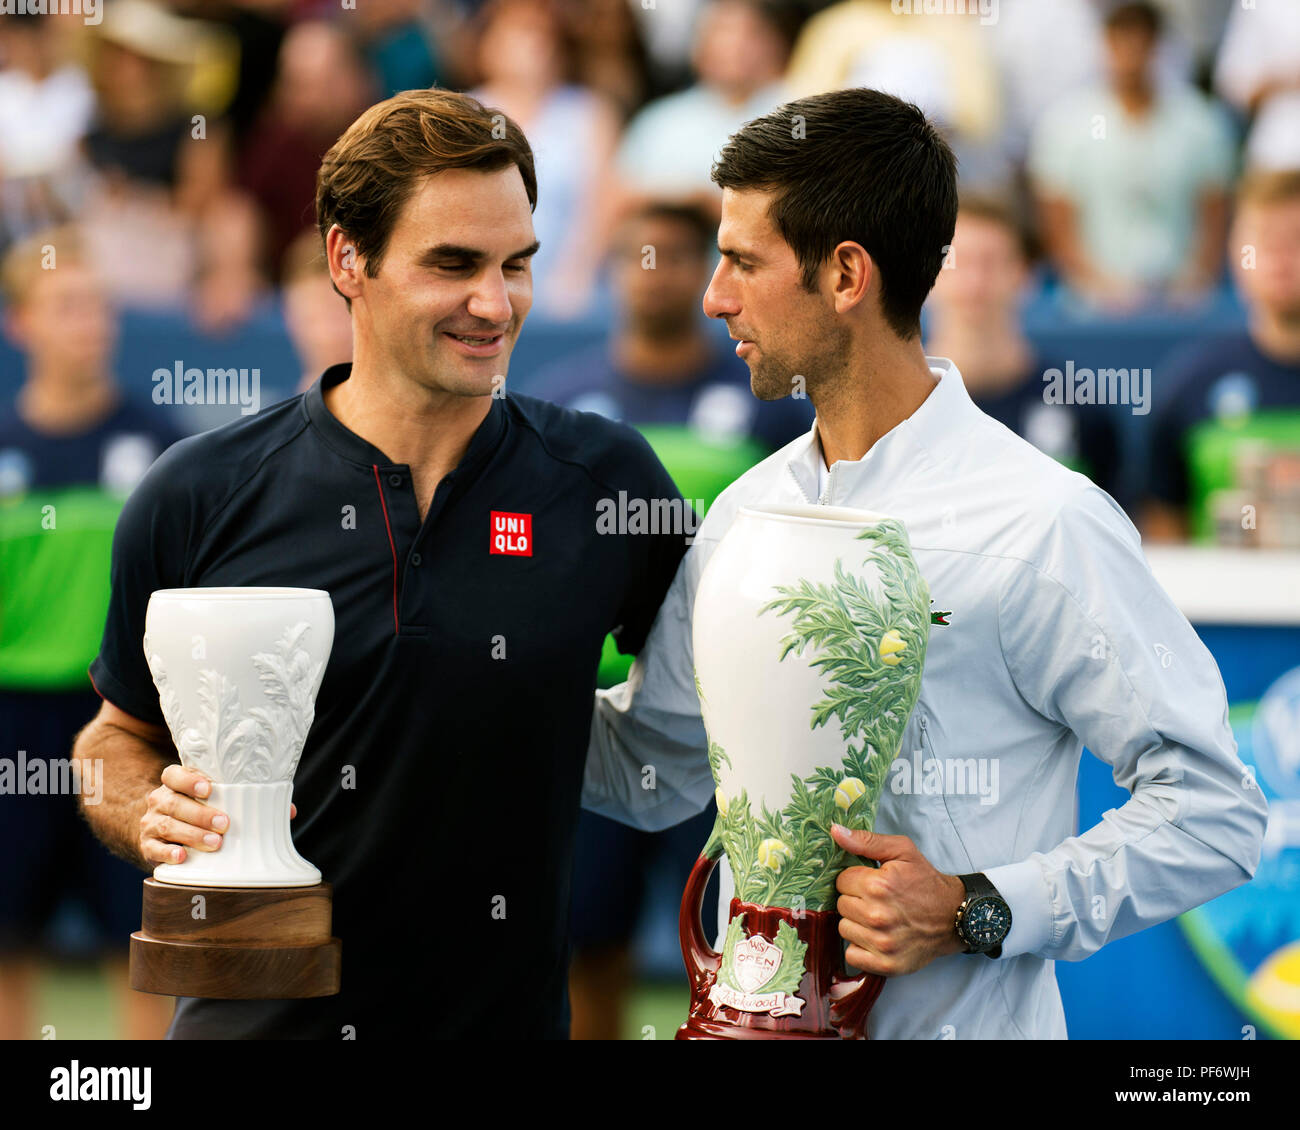 Mason, Ohio, USA. August 19, 2018: Roger Federer (SUI) und Novak Djokovic (SRB) bei der Preisverleihung am westlichen Süden öffnen, Mason, Ohio, USA. Brent Clark/Alamy leben Nachrichten Stockfoto